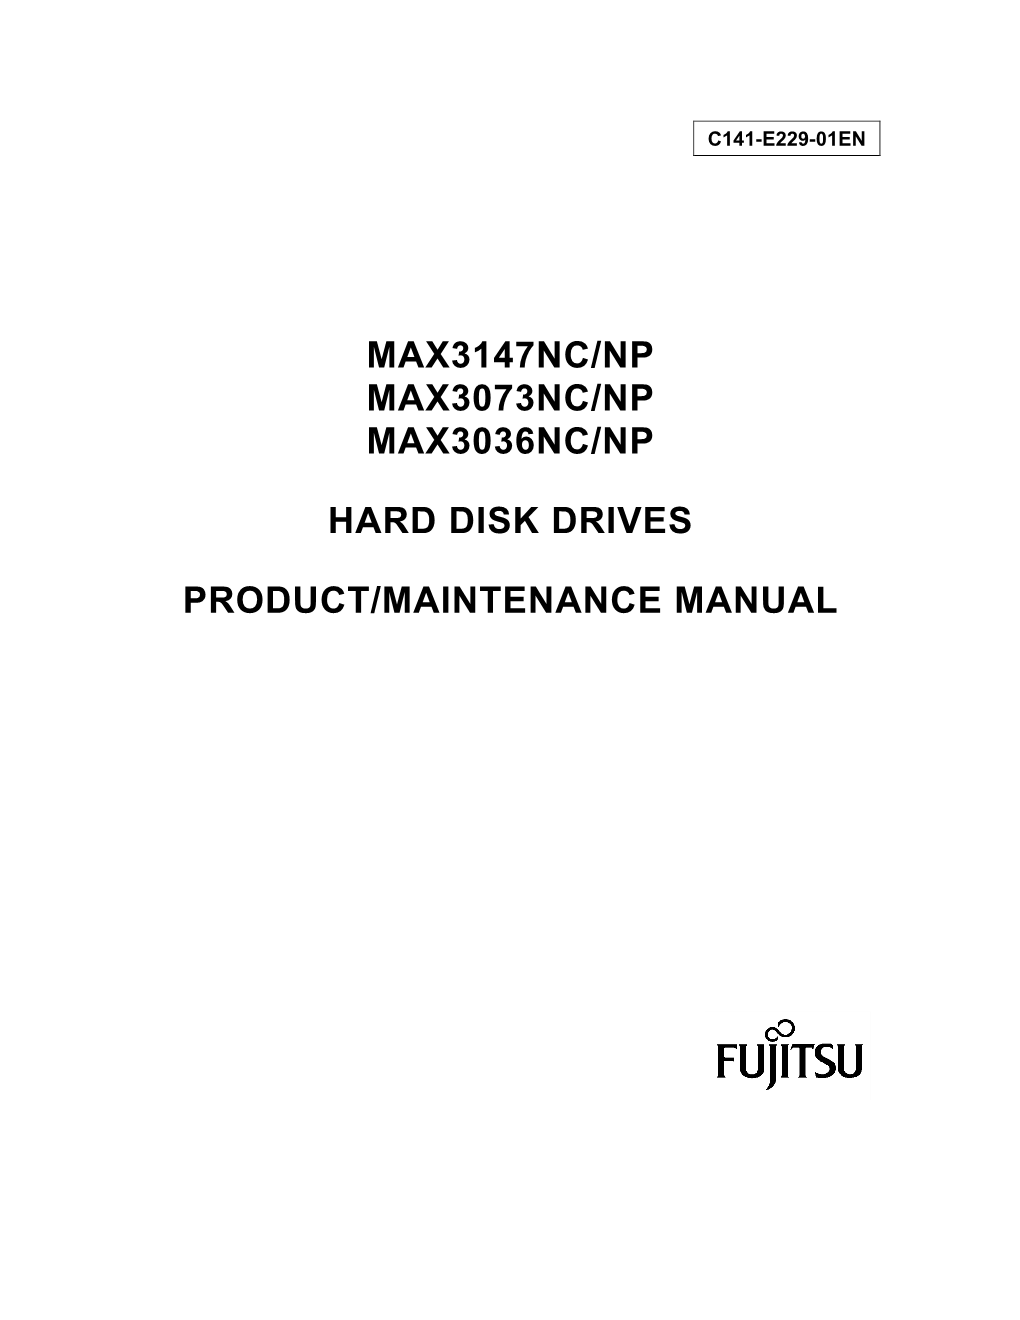 Max3147nc/Np Max3073nc/Np Max3036nc/Np Hard Disk Drives